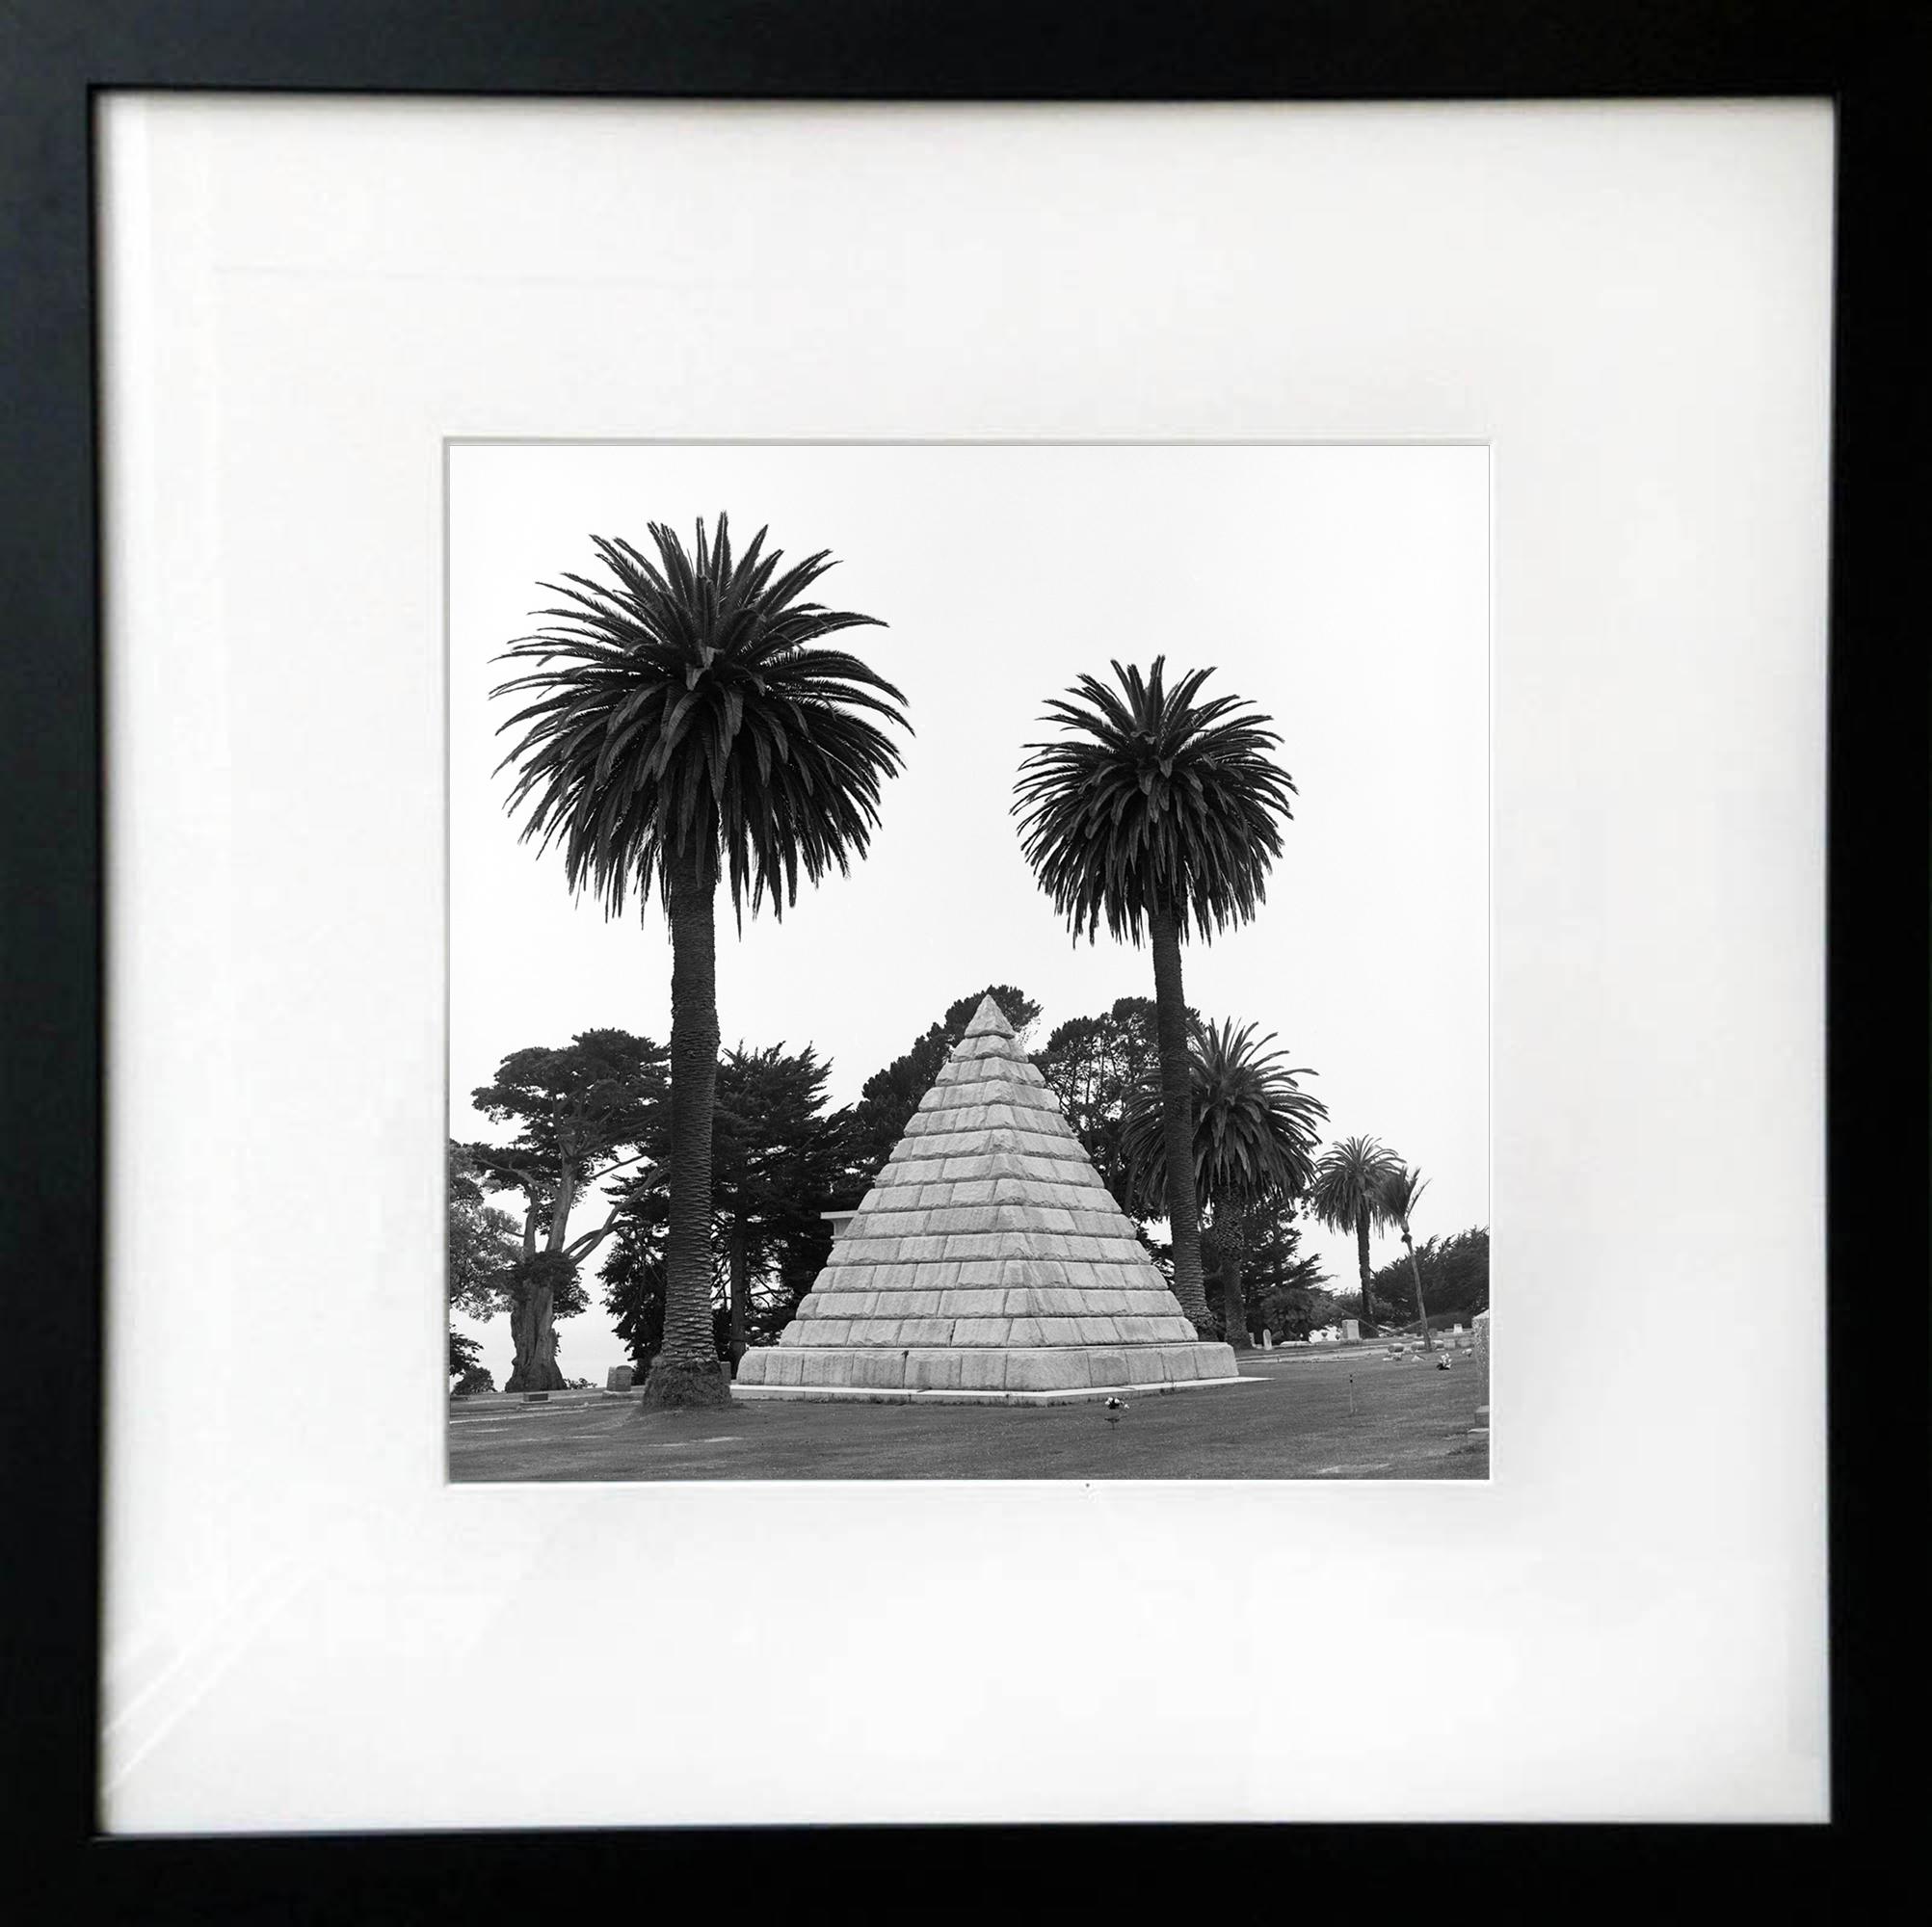 Pyramide et palmiers : photographie encadrée en noir et blanc, monument dans un paysage arboré - Réalisme Photograph par Jenny Lynn